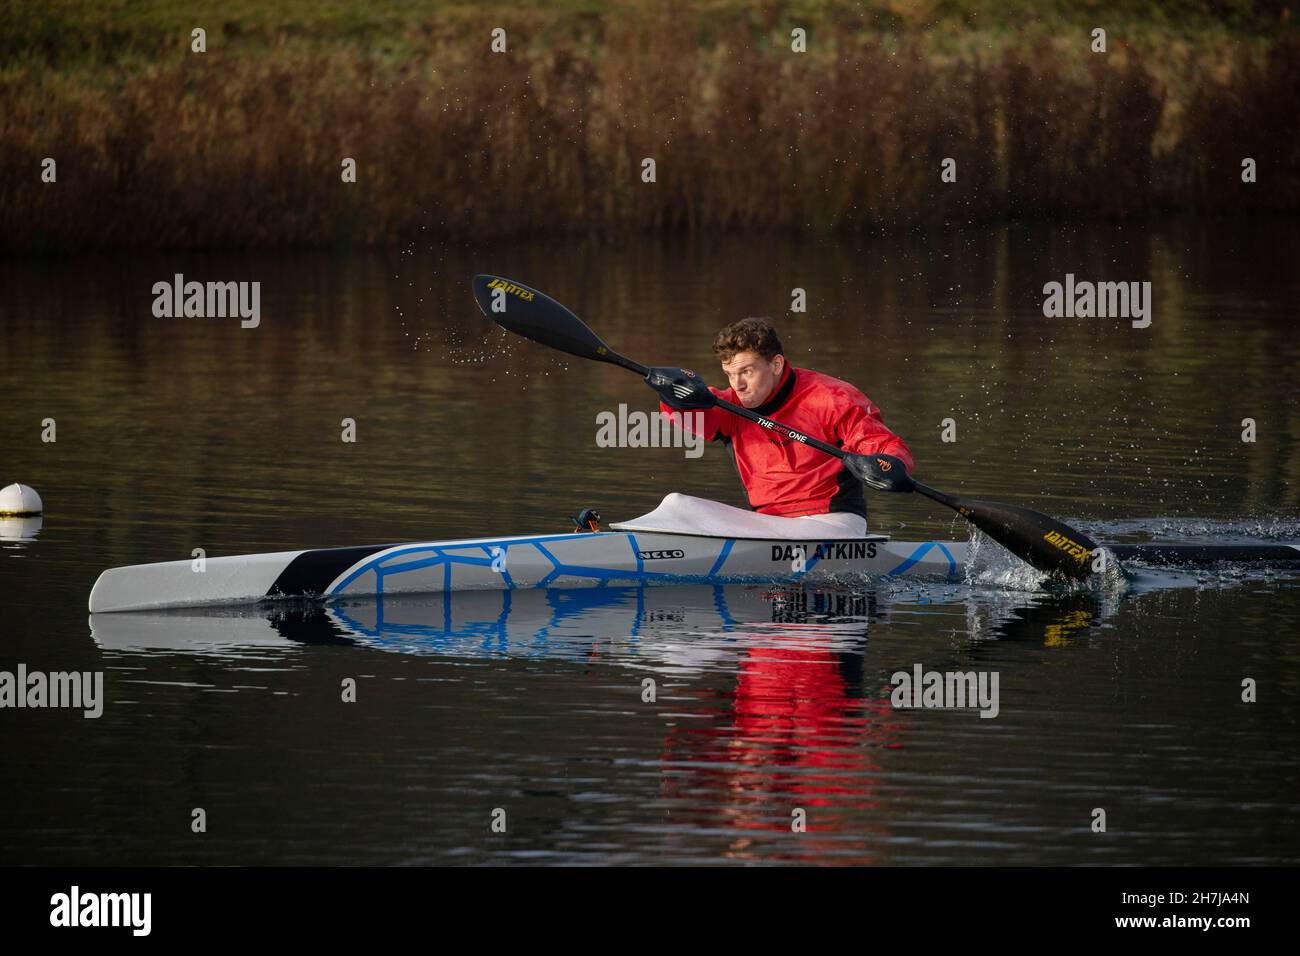 Der britische Sprint-Kanufahrer Dan Atkins während eines morgendlichen Trainings am Dorney Lake am 4th. Februar 2021 in Buckinghamshire im Vereinigten Königreich. Stockfoto